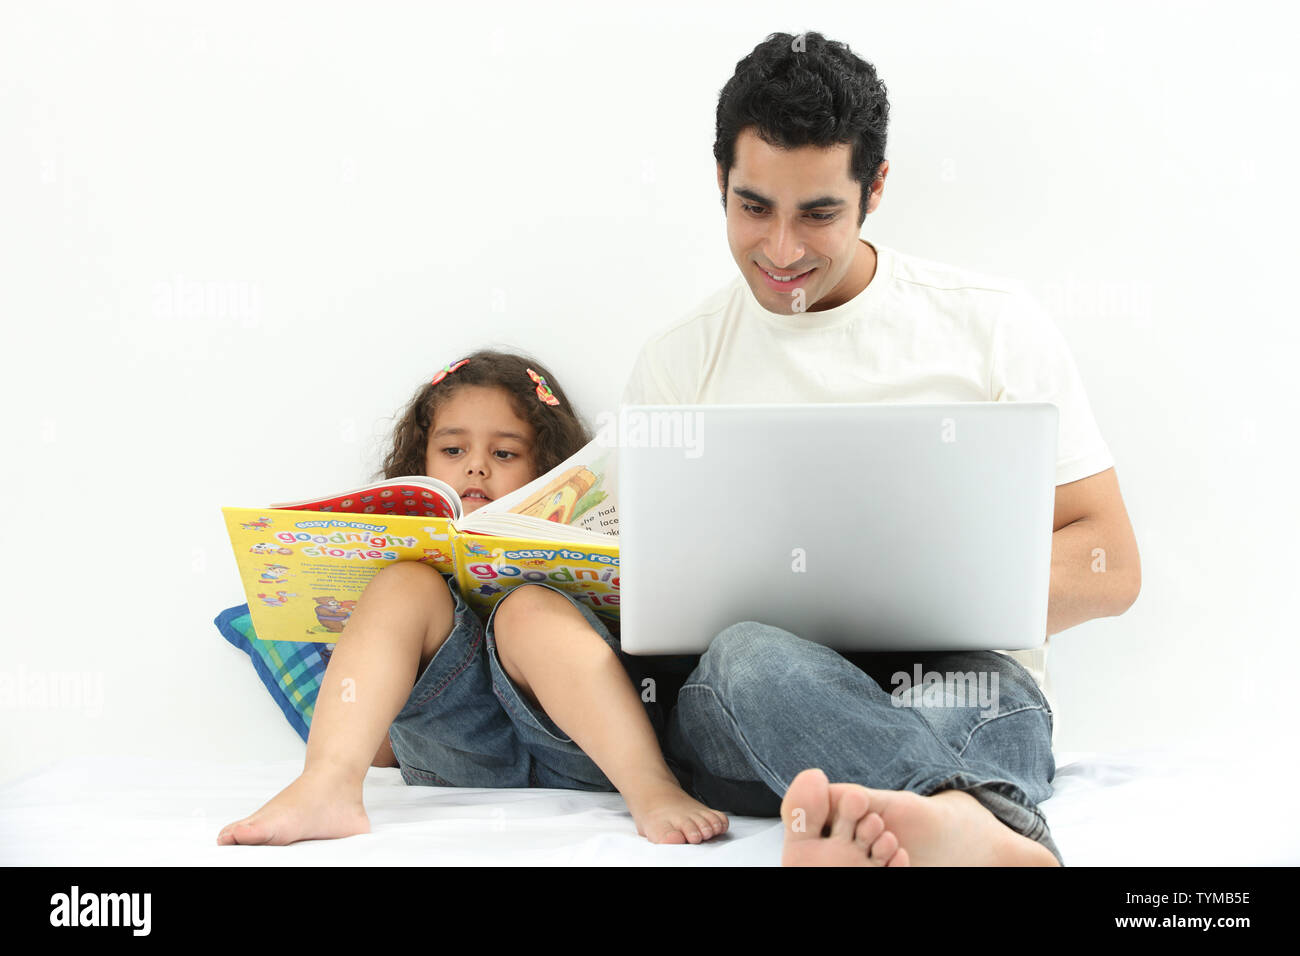 Mann mit Laptop und seiner Tochter, die neben ihm ein Buch liest Stockfoto